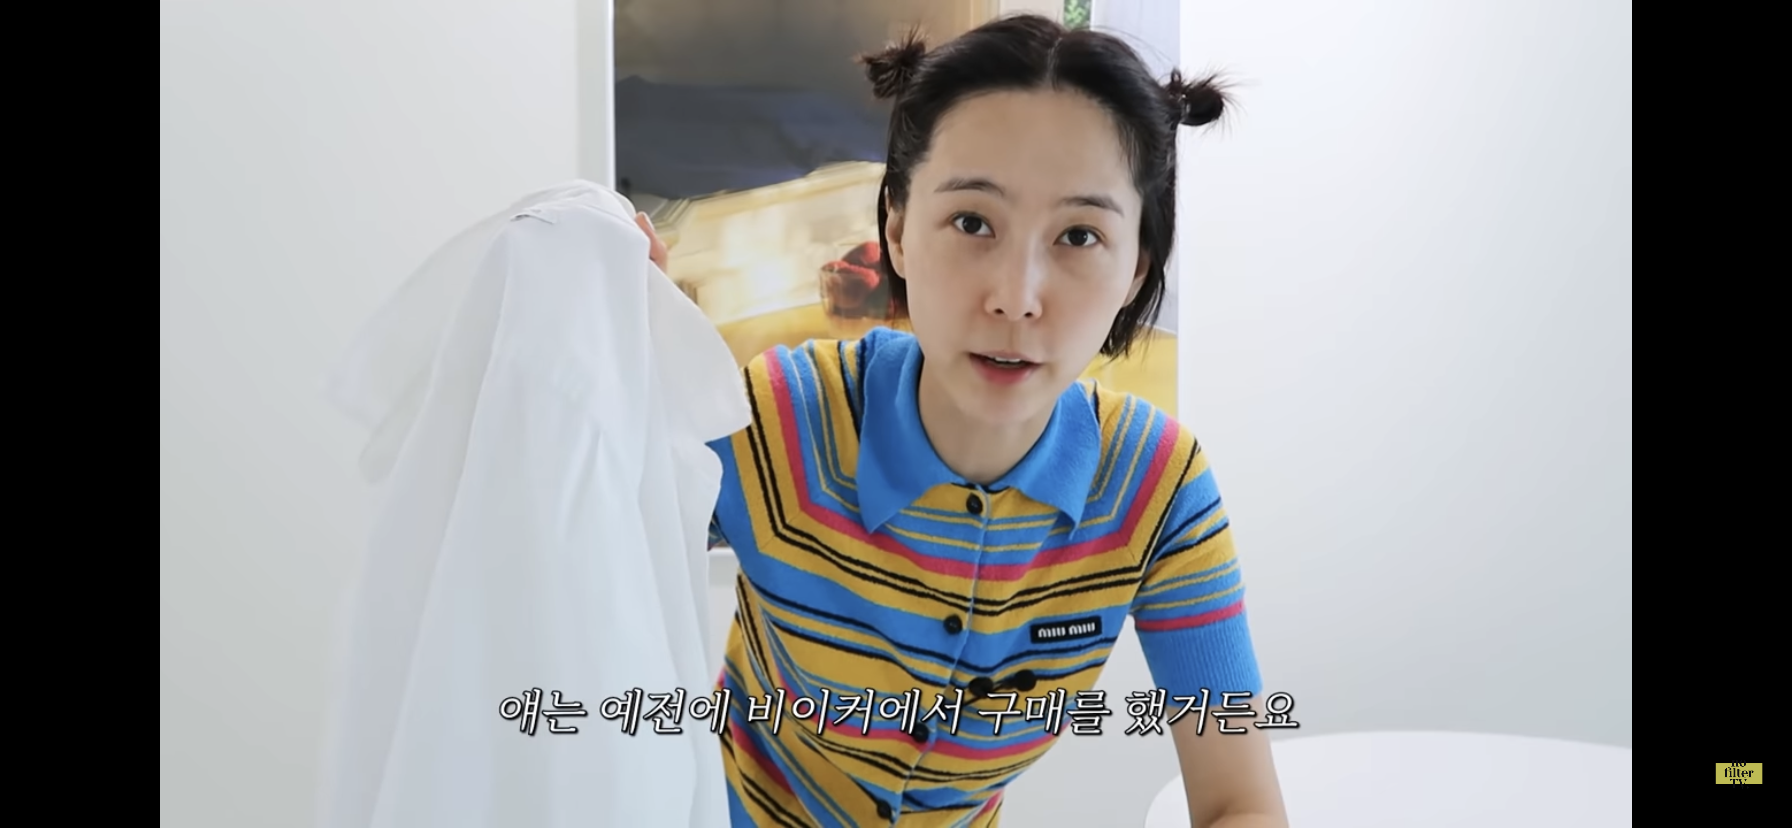 김나영씨가 들고있는 화이트 셔츠